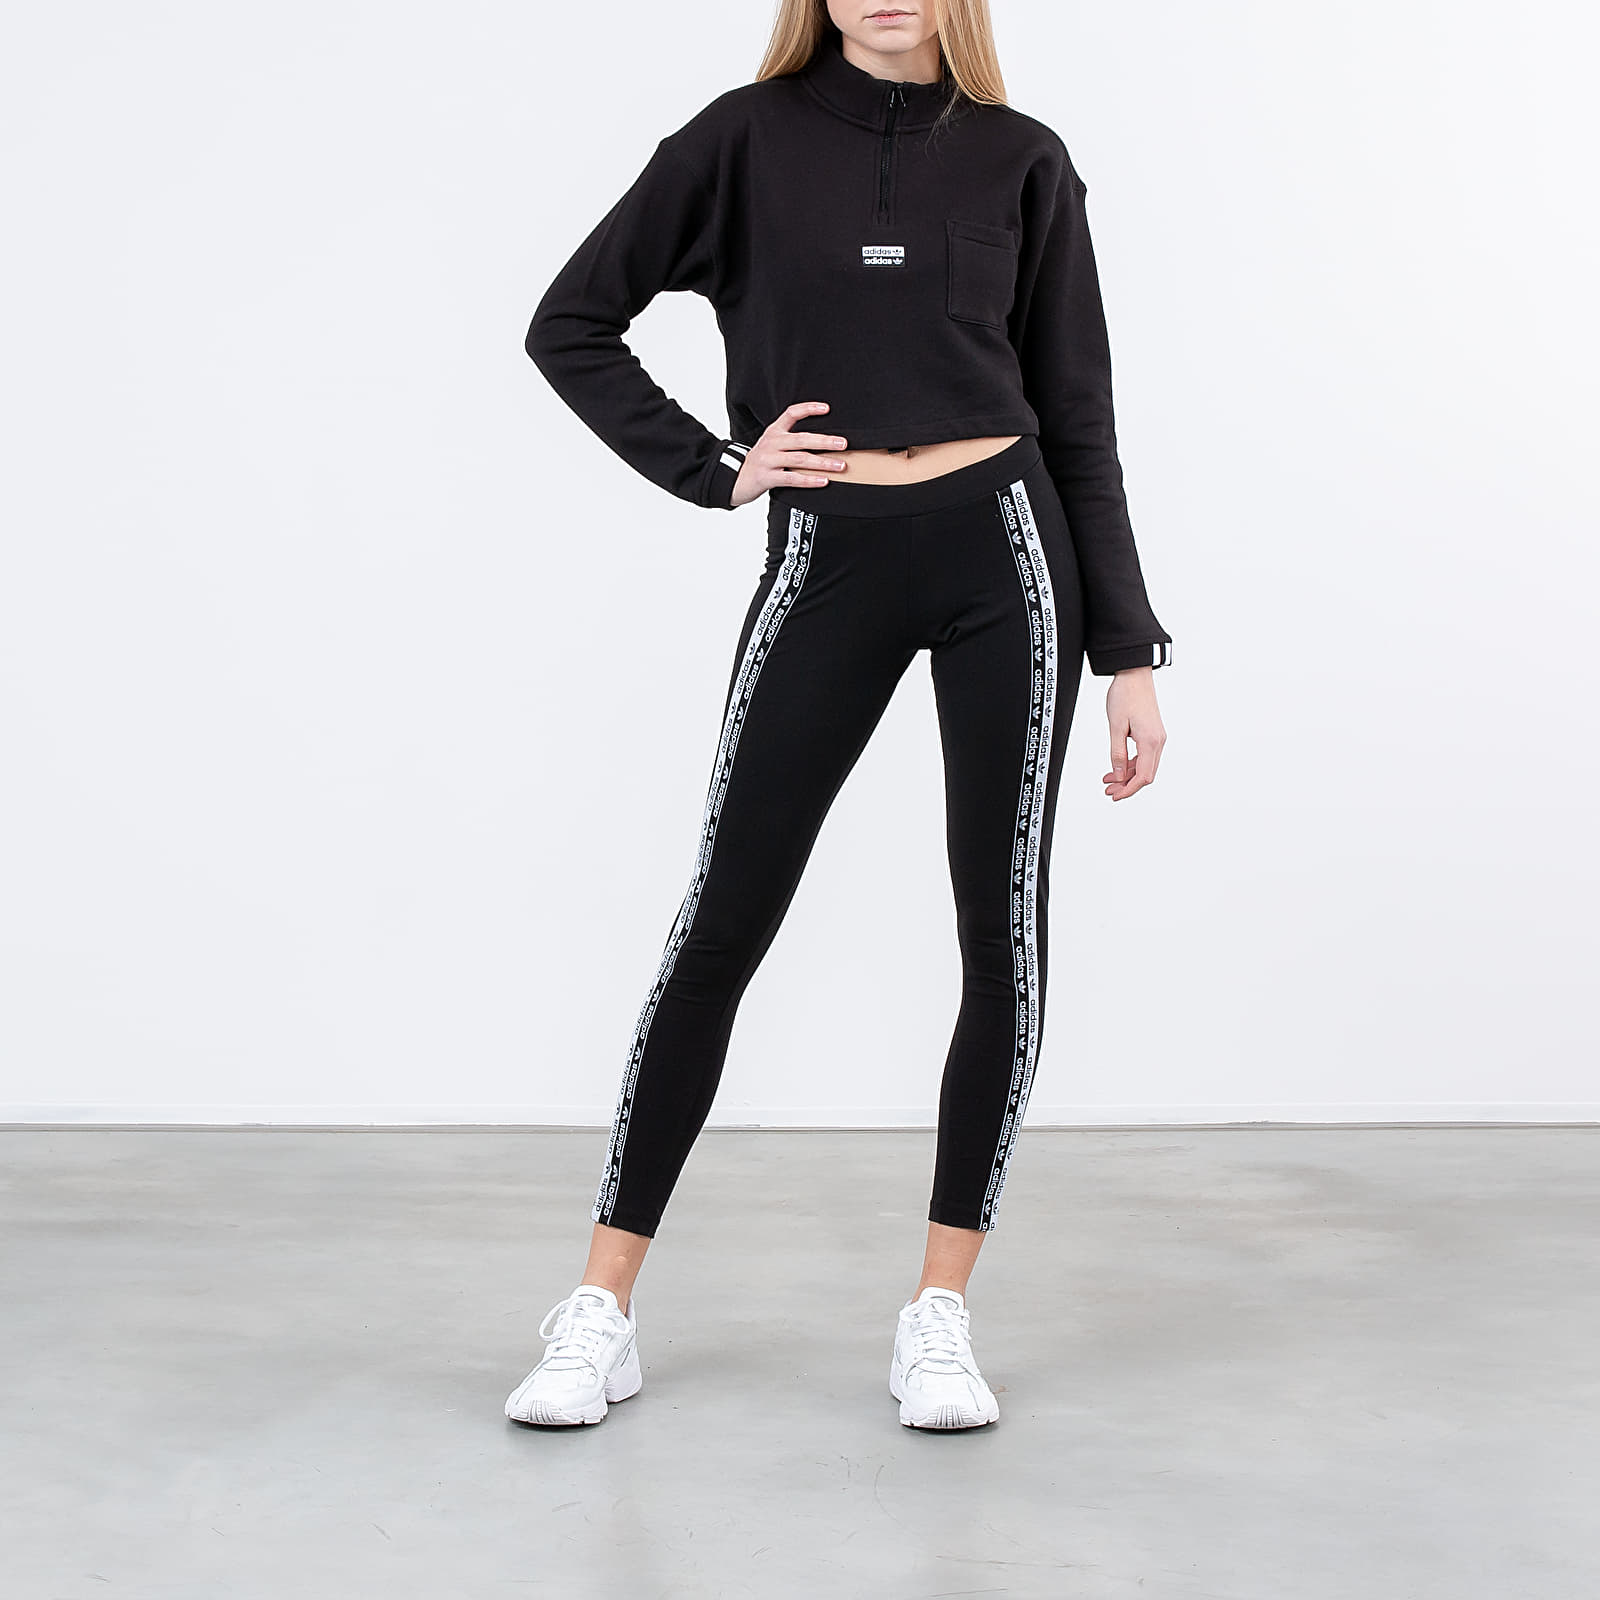 Adidas-LEGGINGS R.Y.V.  Collants femme, Legging femme, Femme black